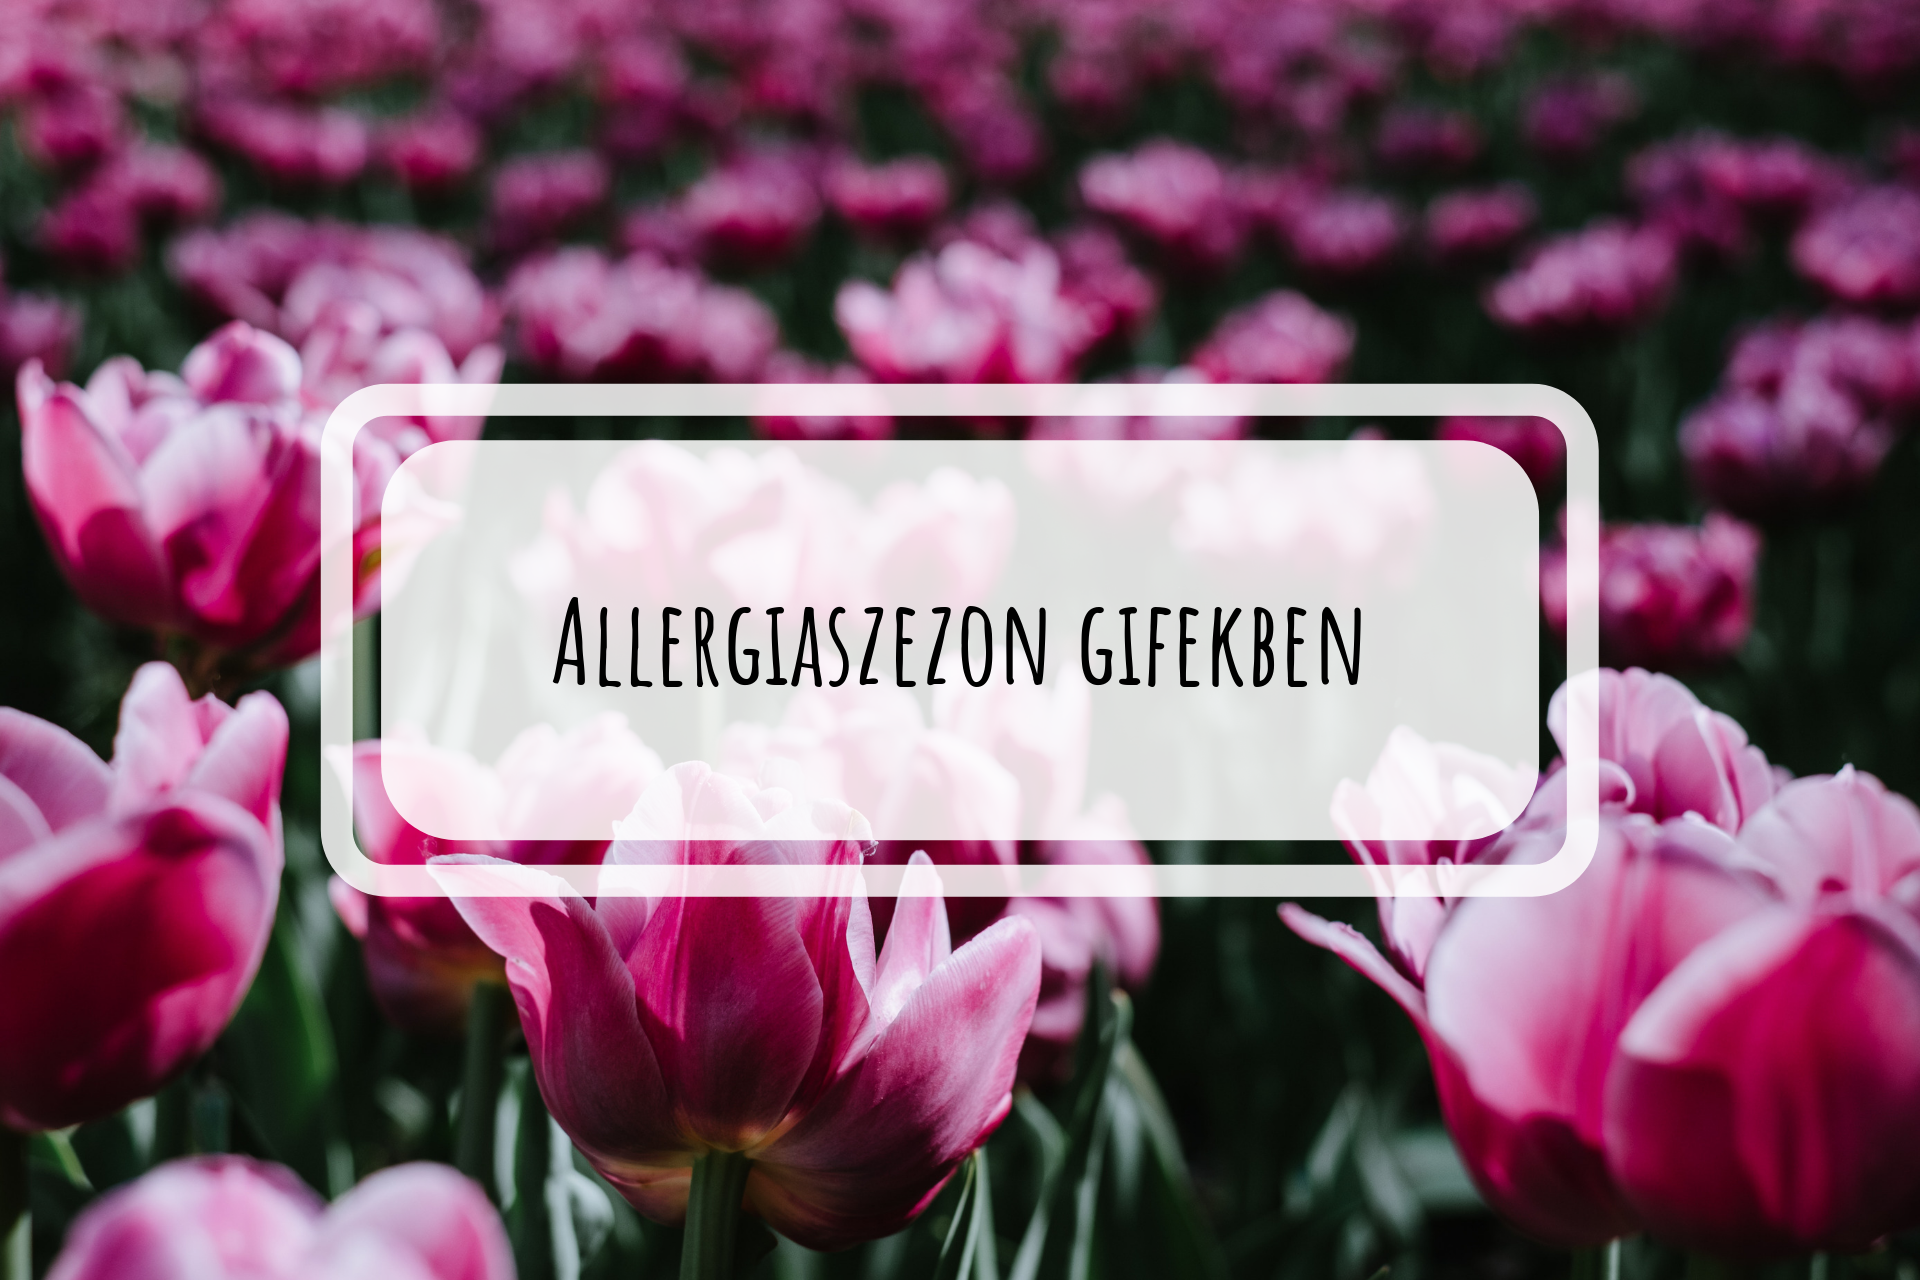 allergiaszezon_gifekben.png